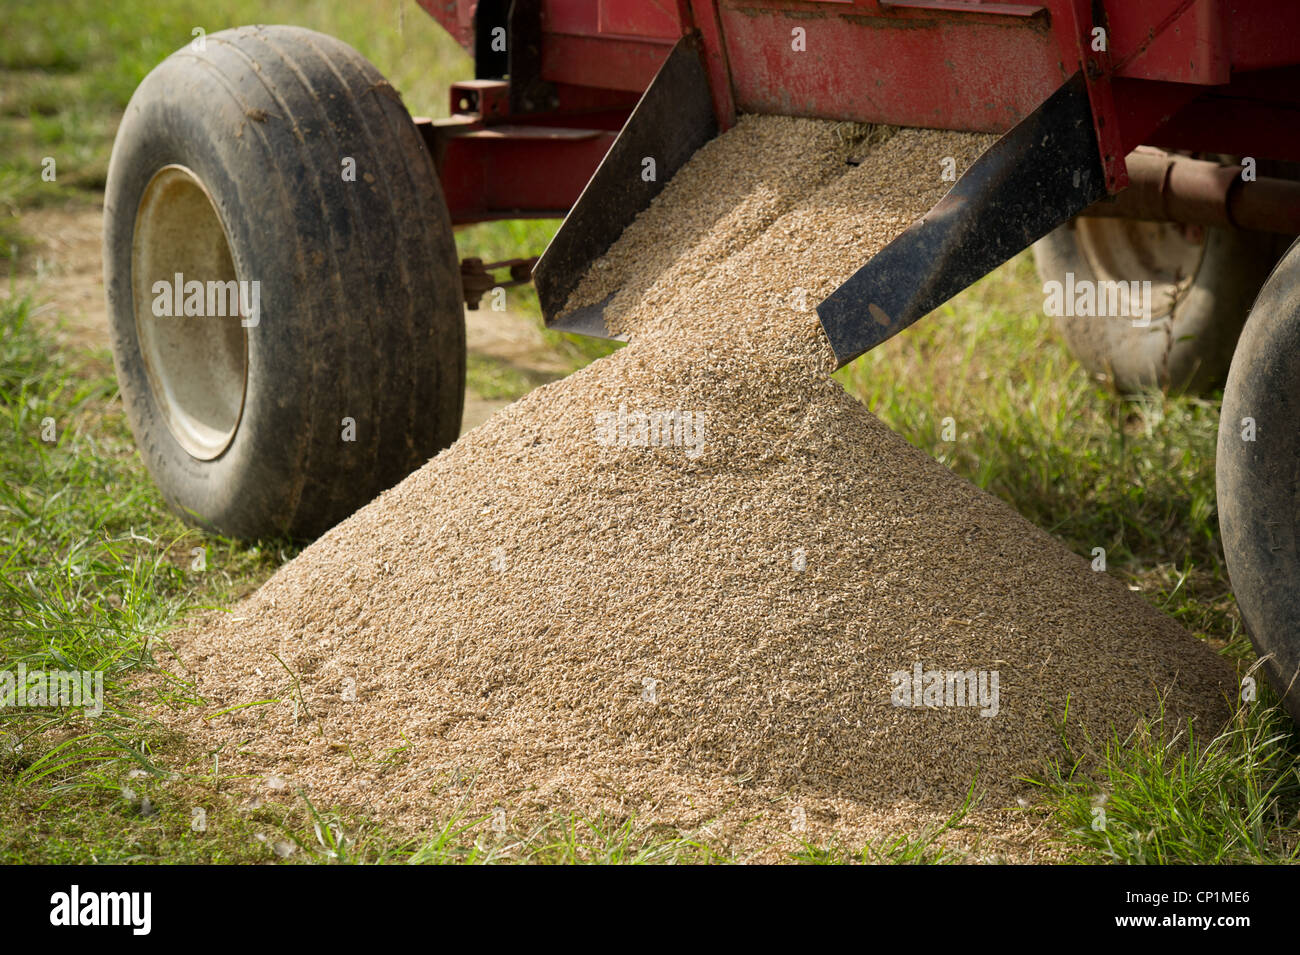 Répandre des grains de céréales dans la zone d'équipement Banque D'Images